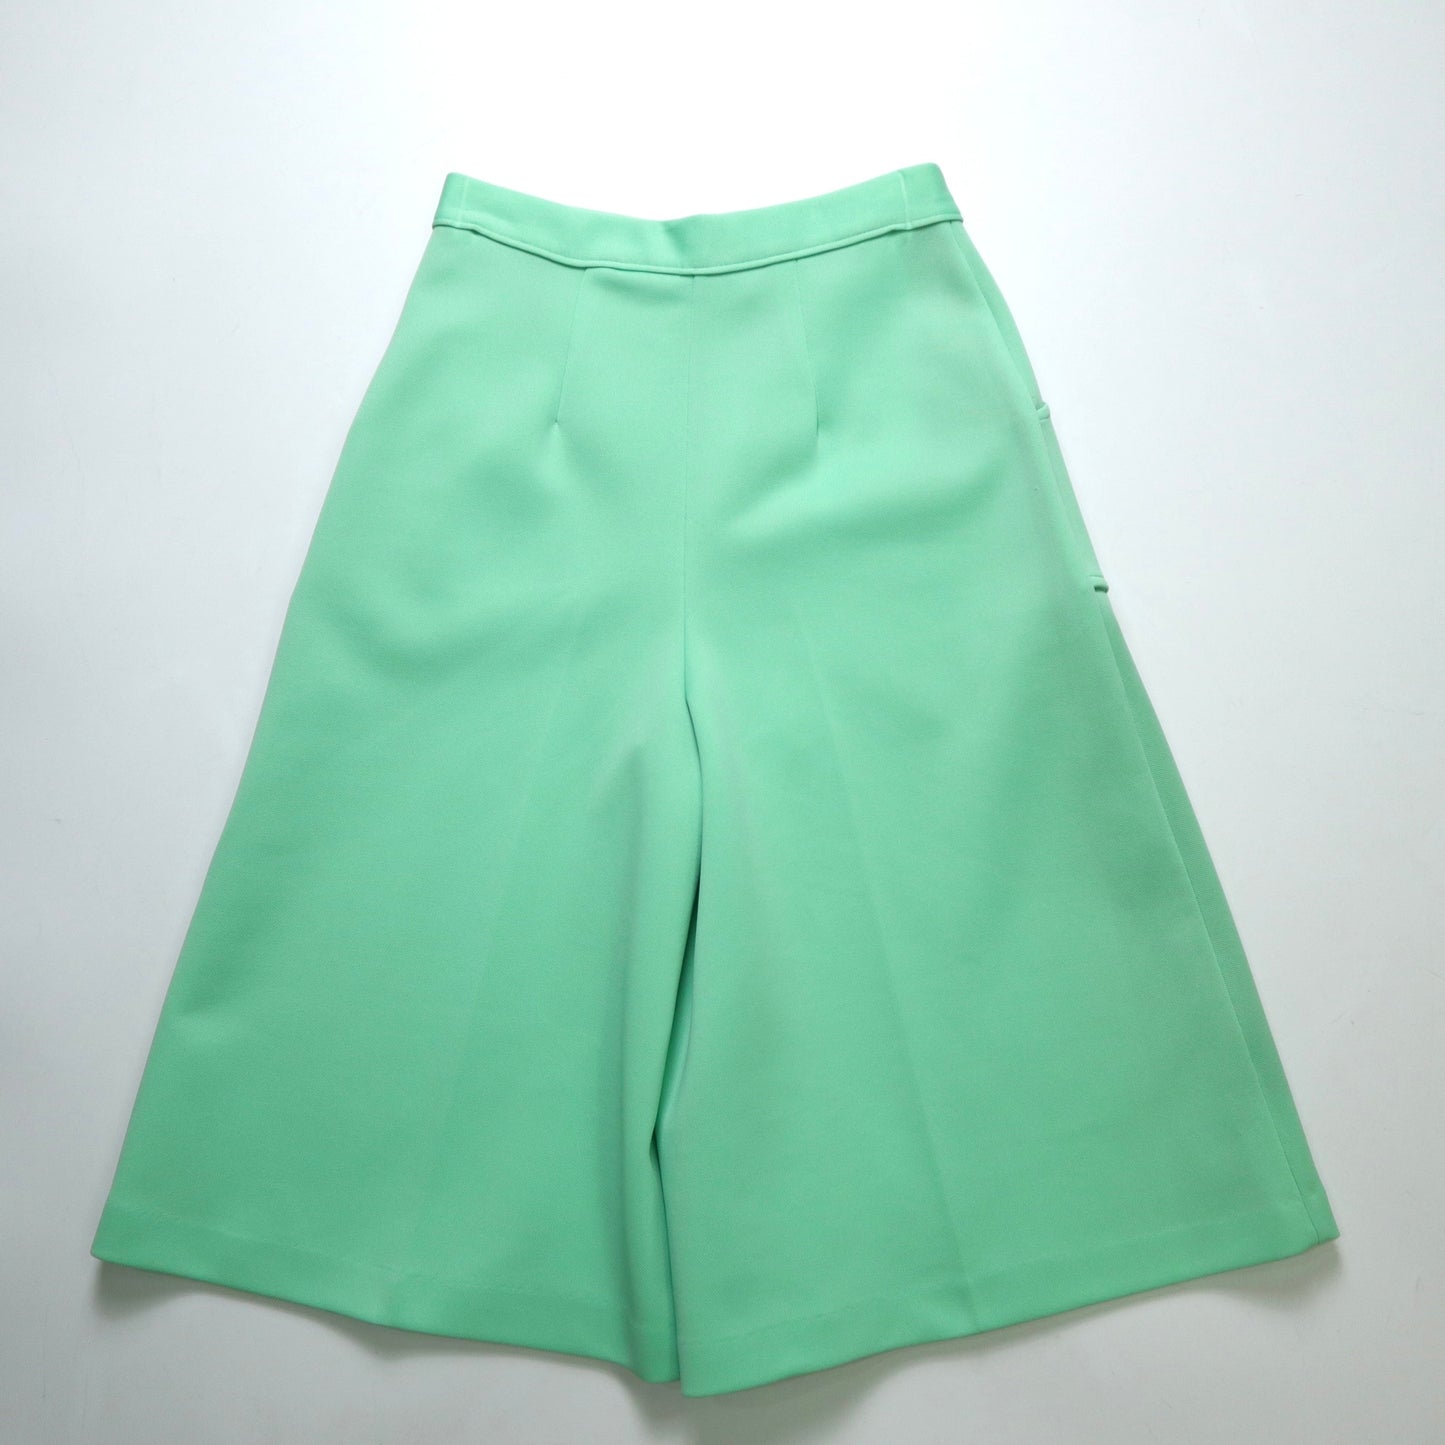 (26-27w) 1980s 美國薄荷綠立體口袋七分寬褲